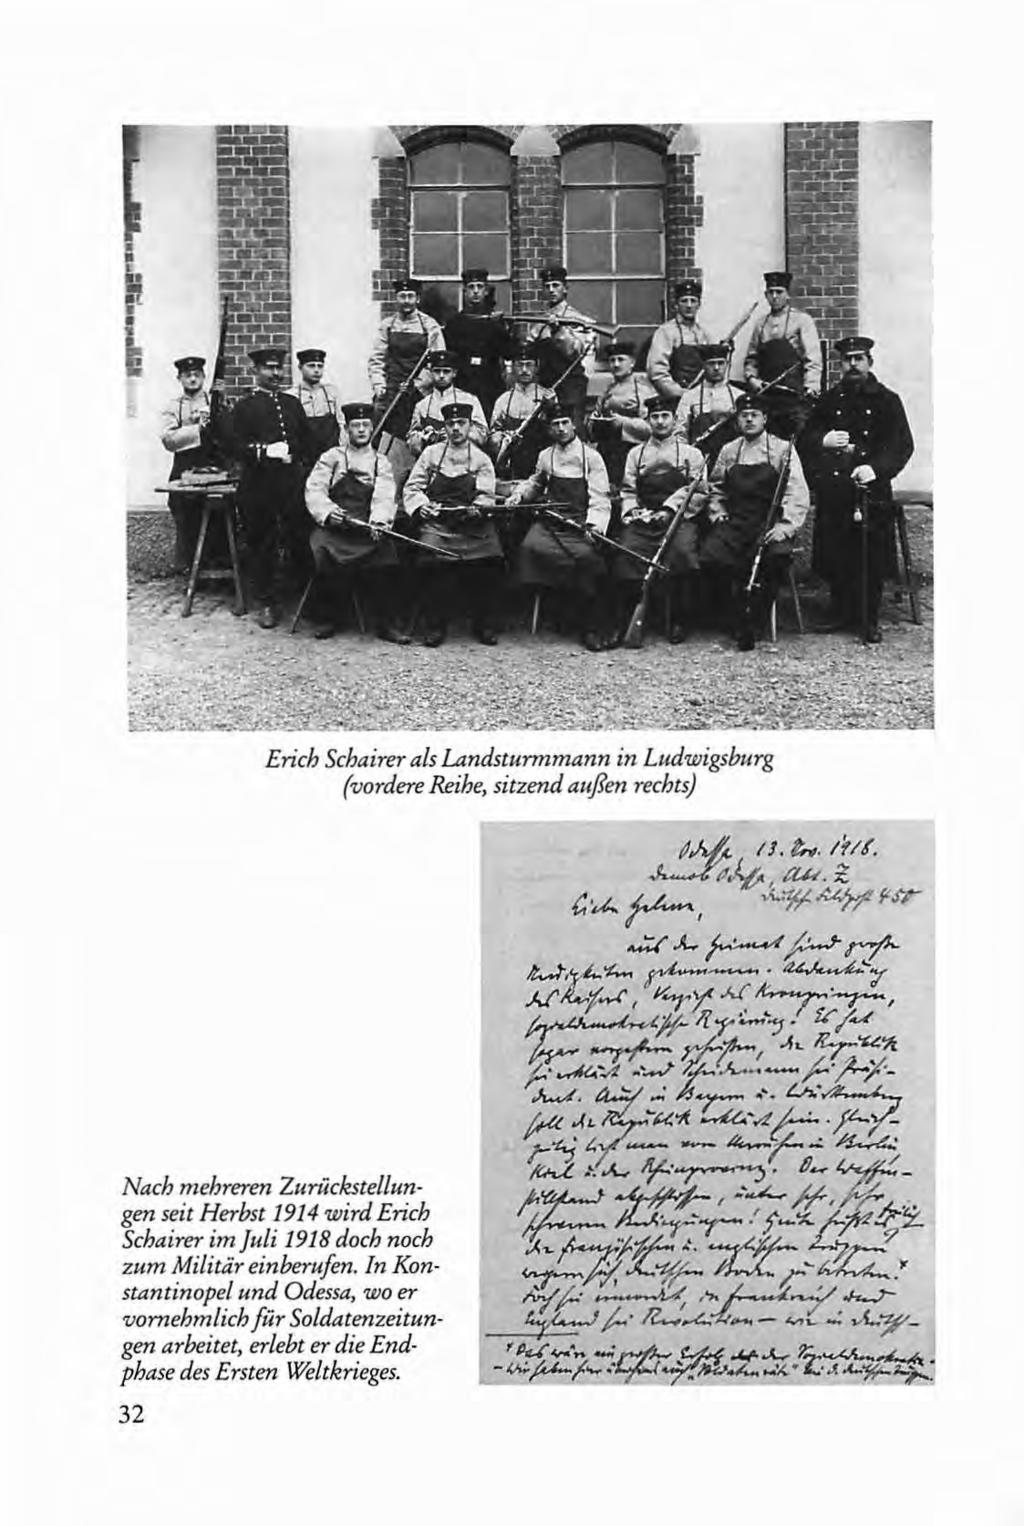 Erich Schairer als LAndsturmmann in Ludwigsburg (vordere Reihe, sitzend außen rechts) Nach mehreren Zurückstellungen seit Herbst 1914 wird Erich Schairer im Juli